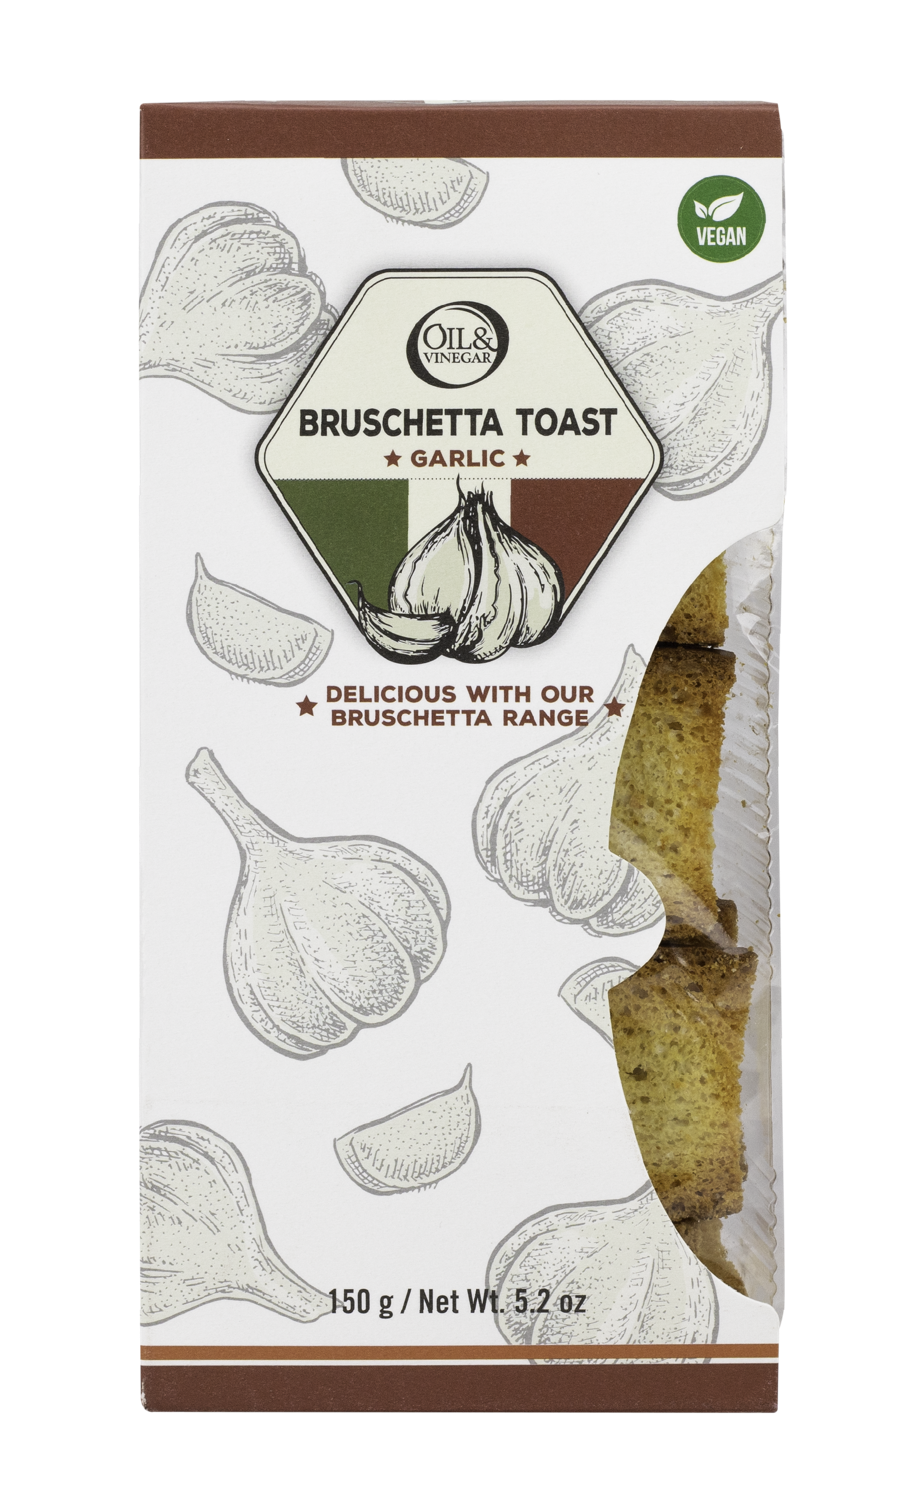 OilandVinegar_Bruschetta toast garlic 150g_3,95EUR